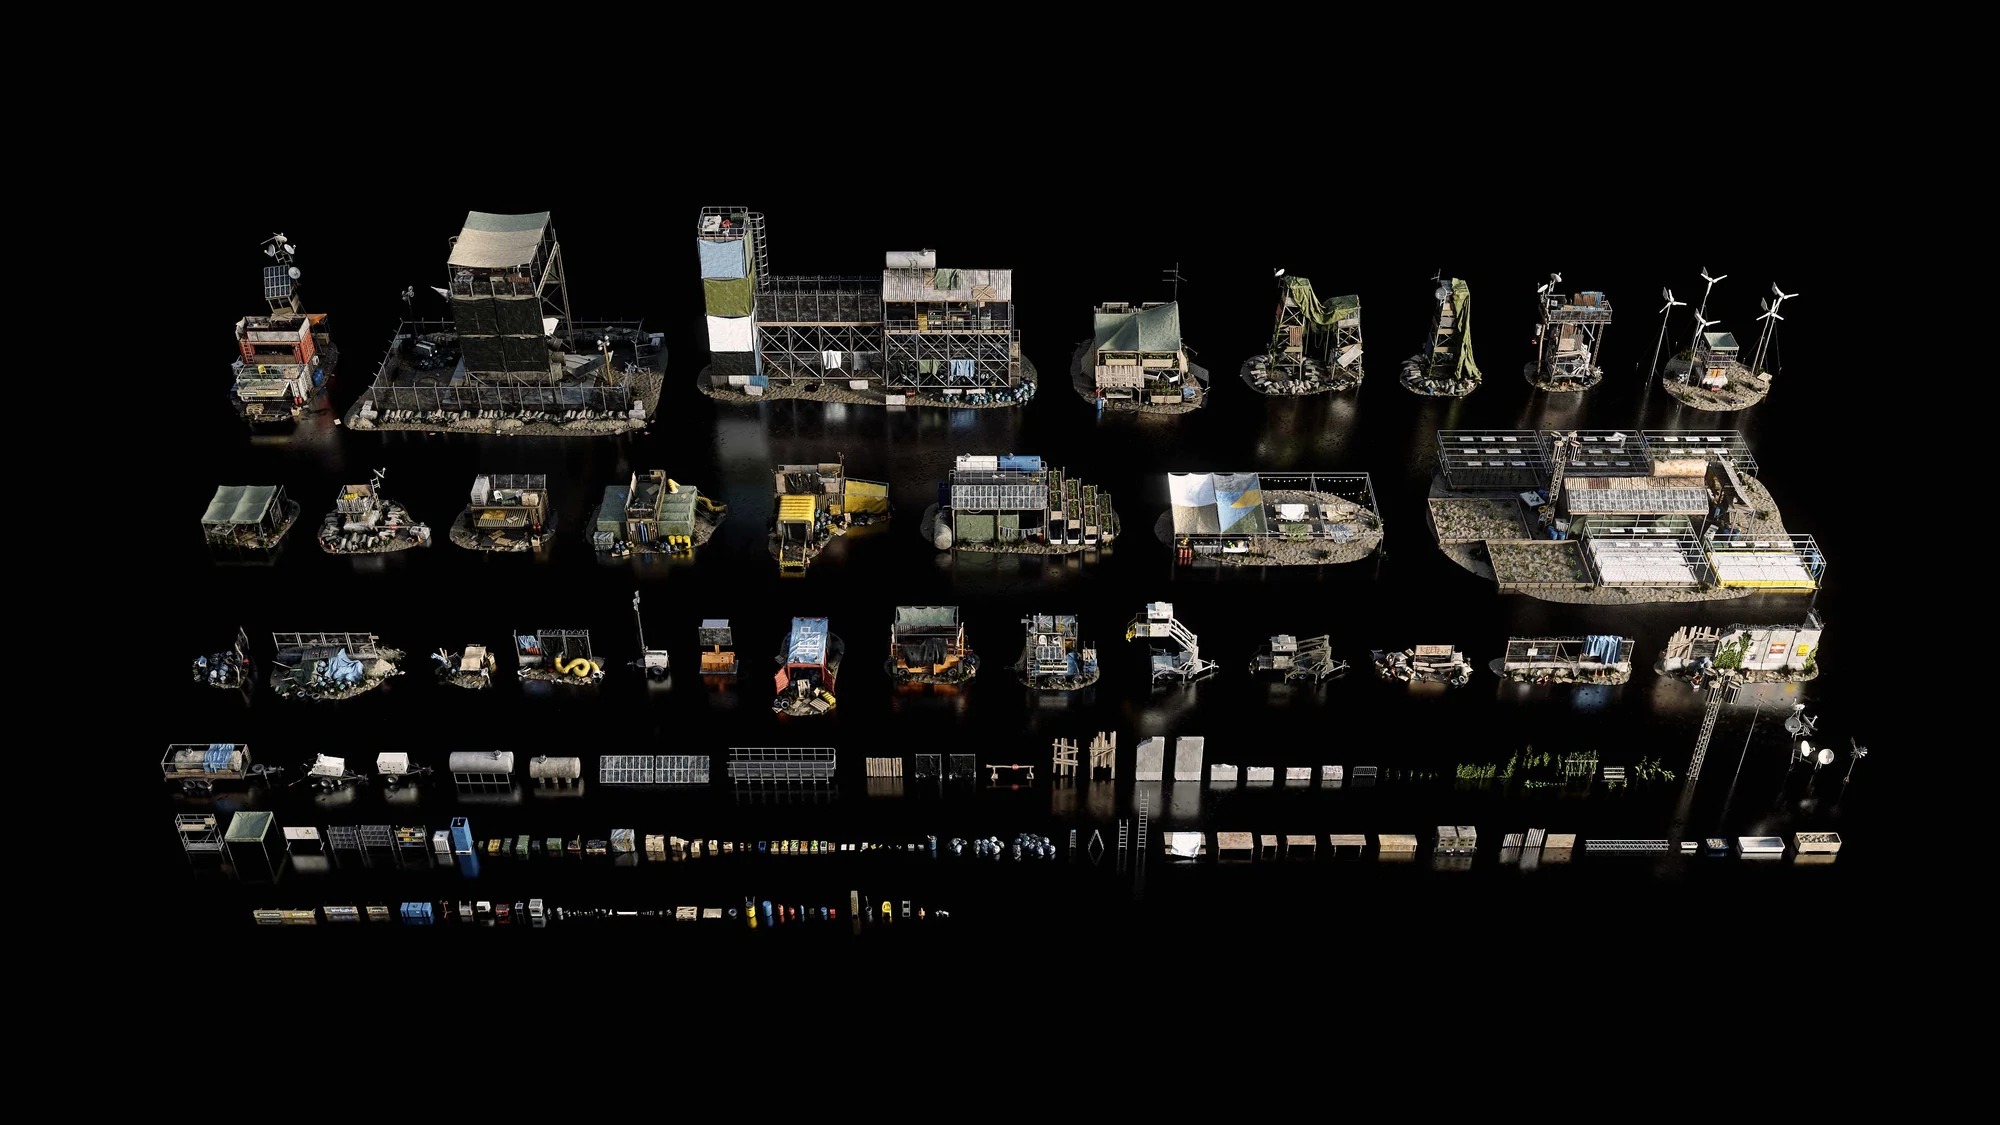 废墟模型补给站模型非军事隔离区3D模型合集Kitbash3D -DMZ